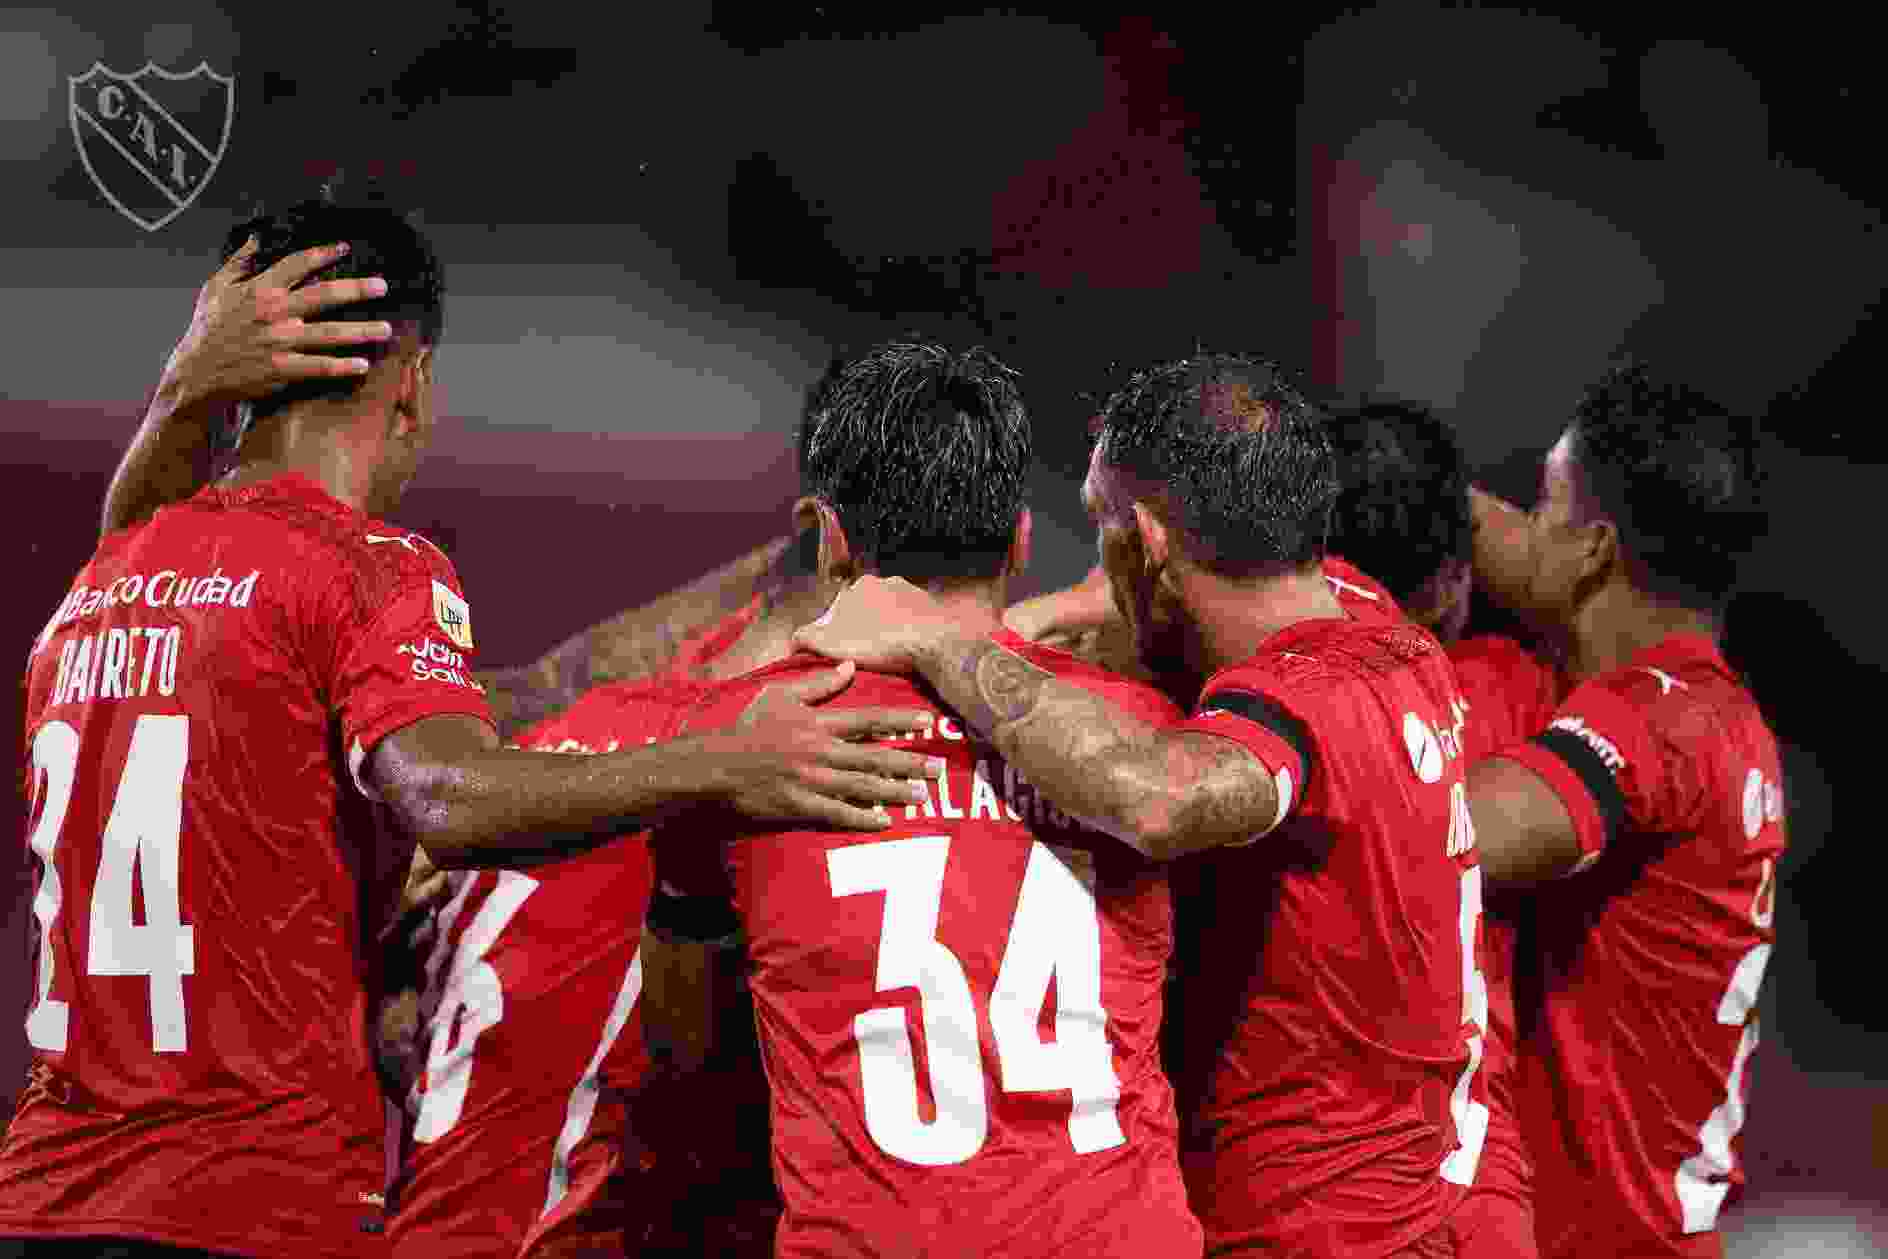 Arriba a nuestro país el Club Atlético Independiente